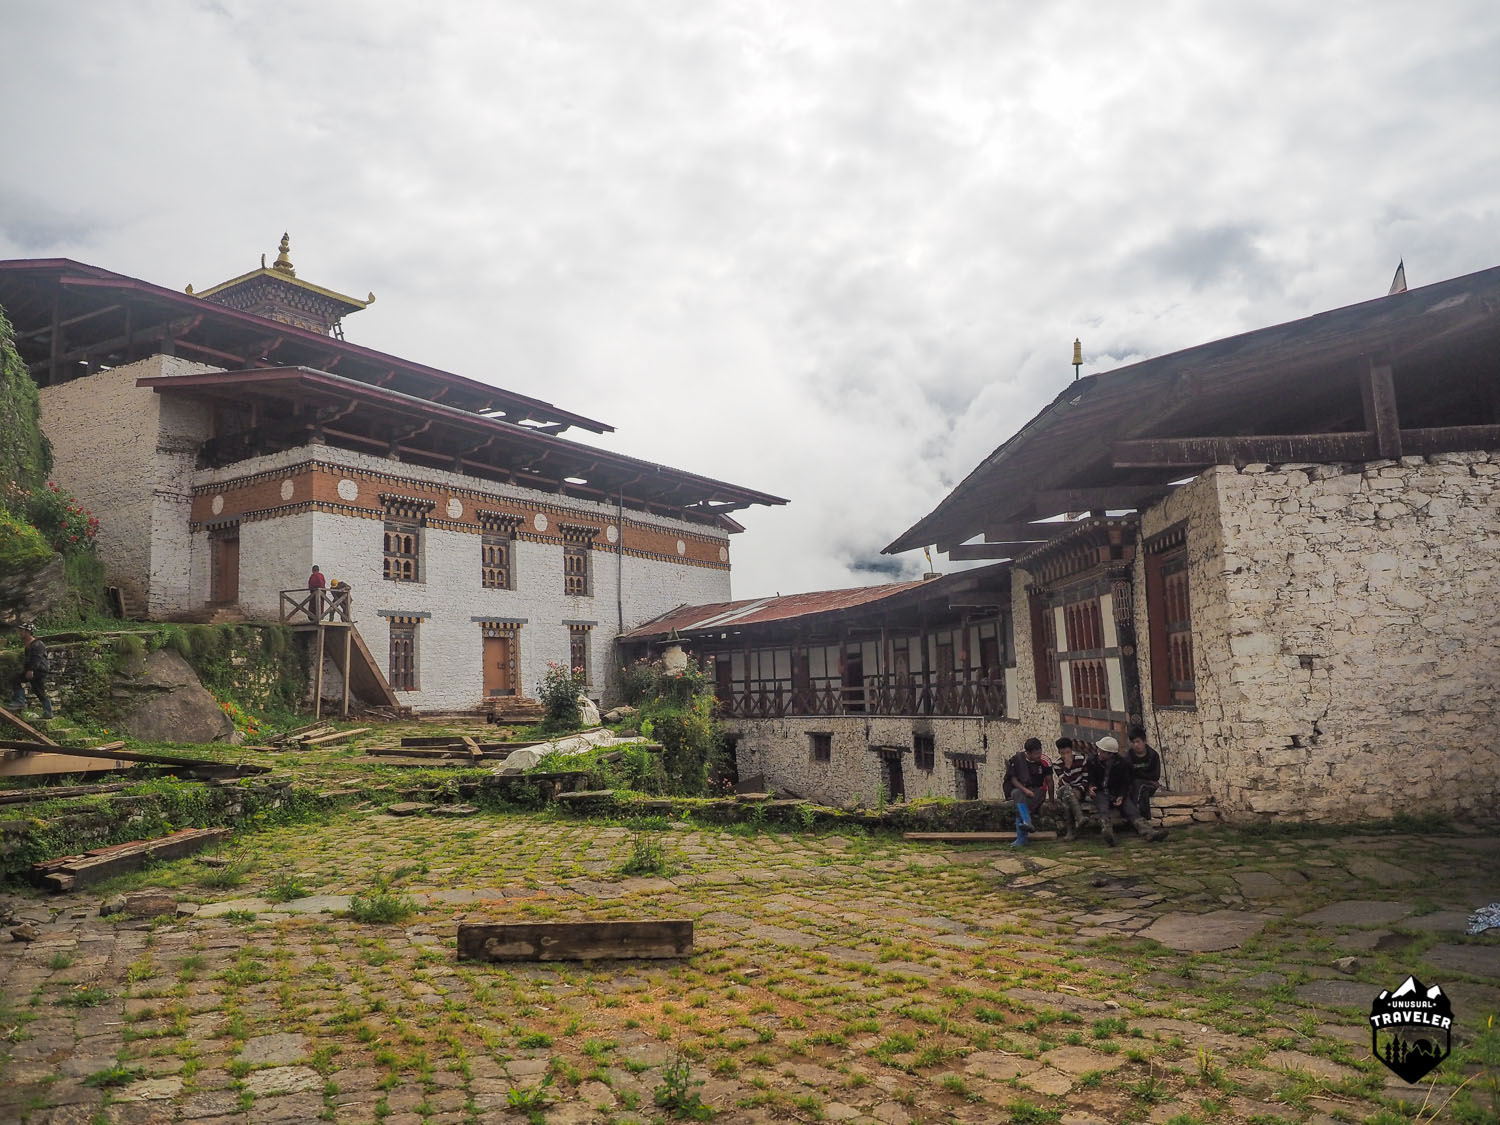 The main courtyard inside the Dzong.